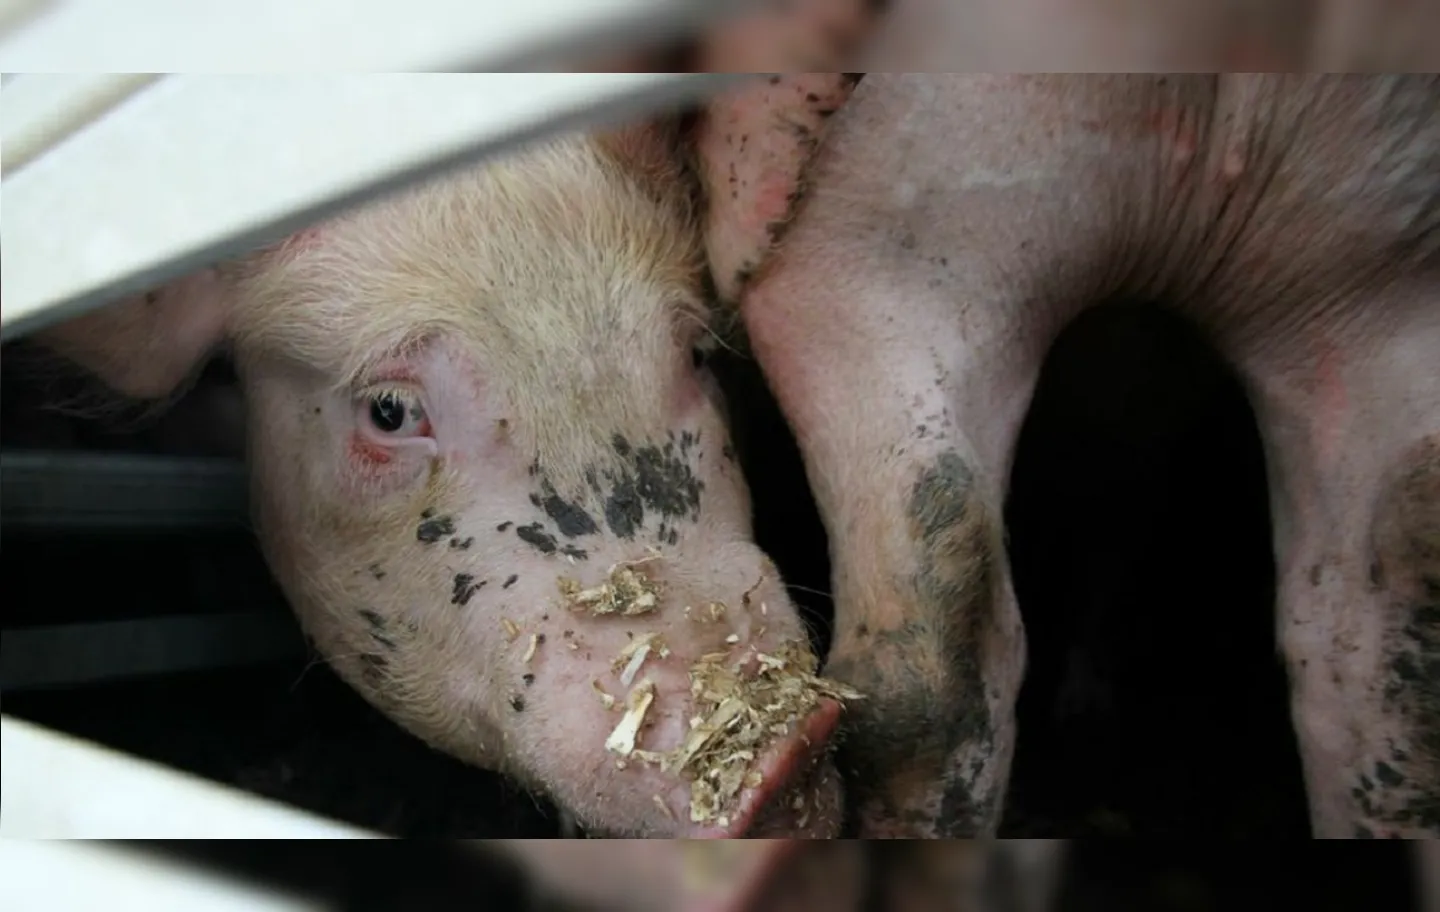 Porcos estavam sendo levados para o abate em um frigorífico | Foto: Reprodução | Radar64